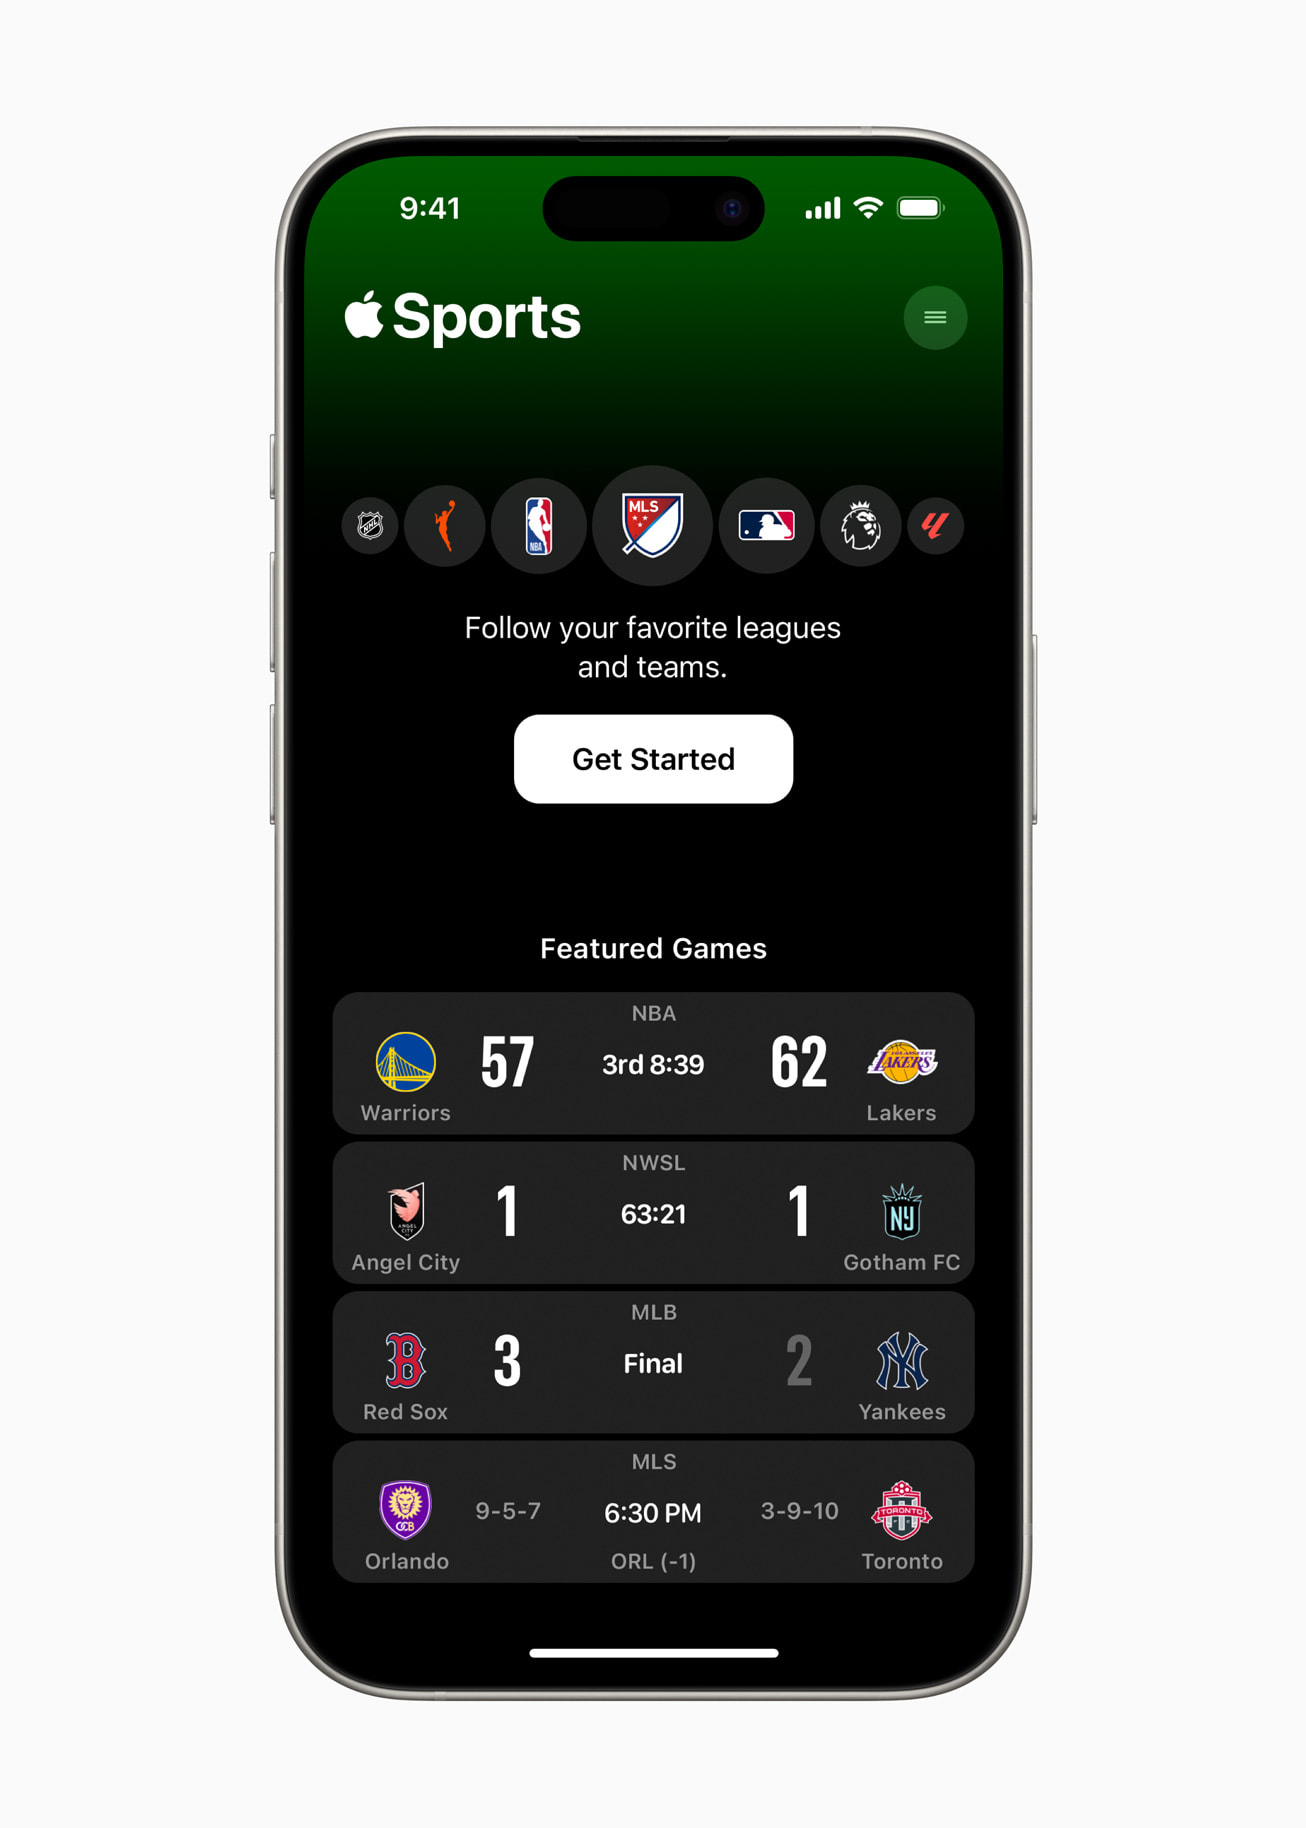 Apple Sports, la nueva App de Deportes de Apple